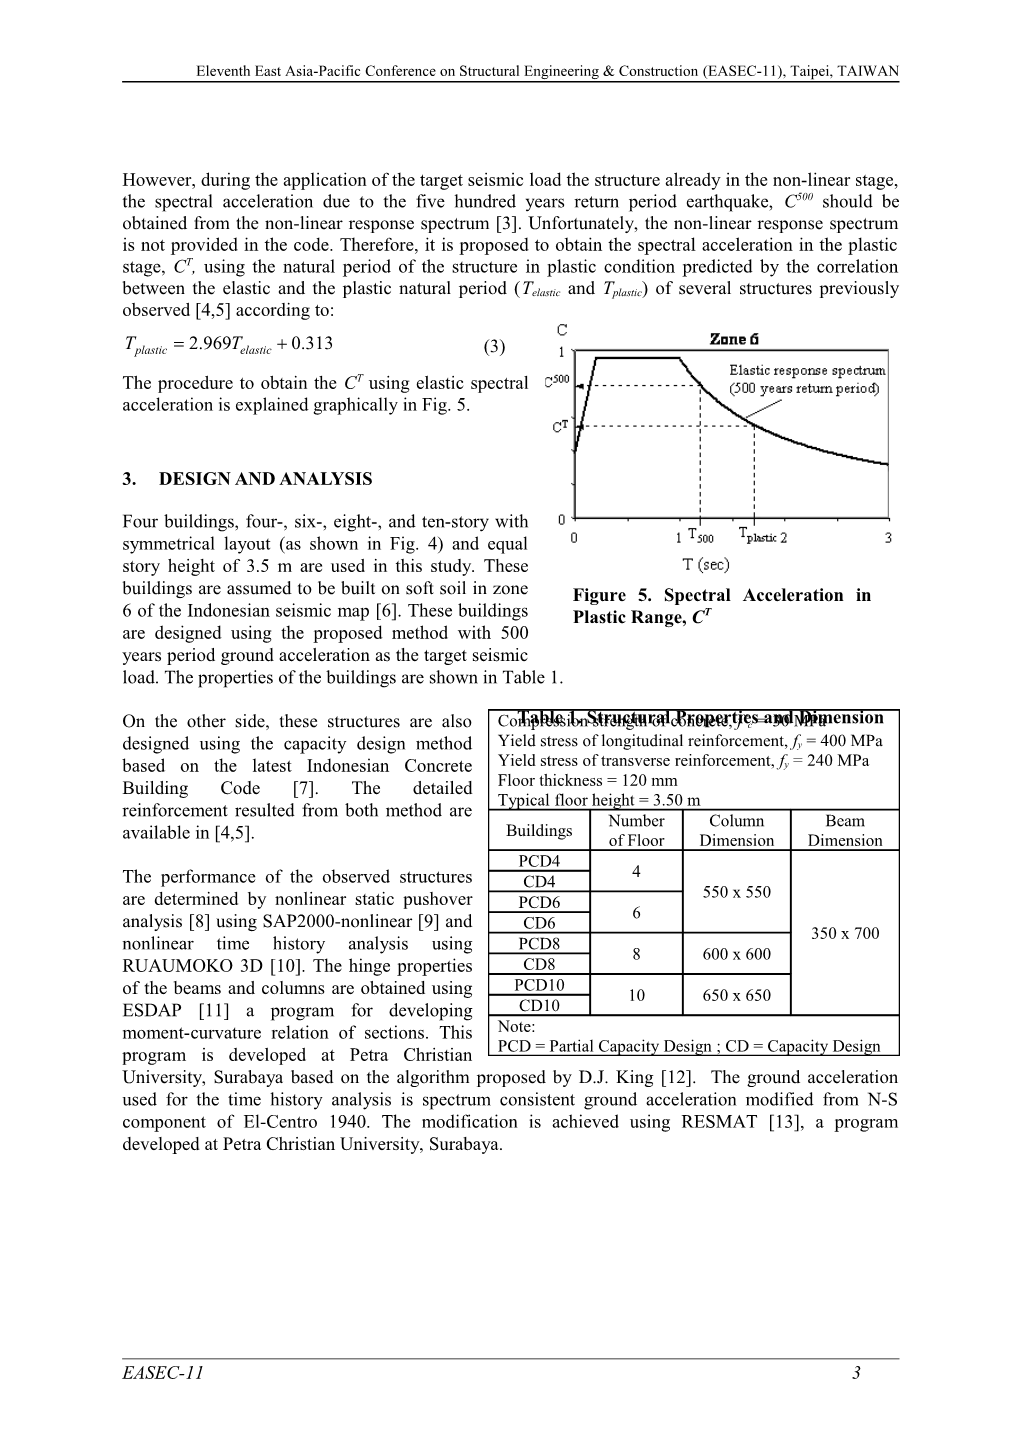 Model Paper for EASEC-9